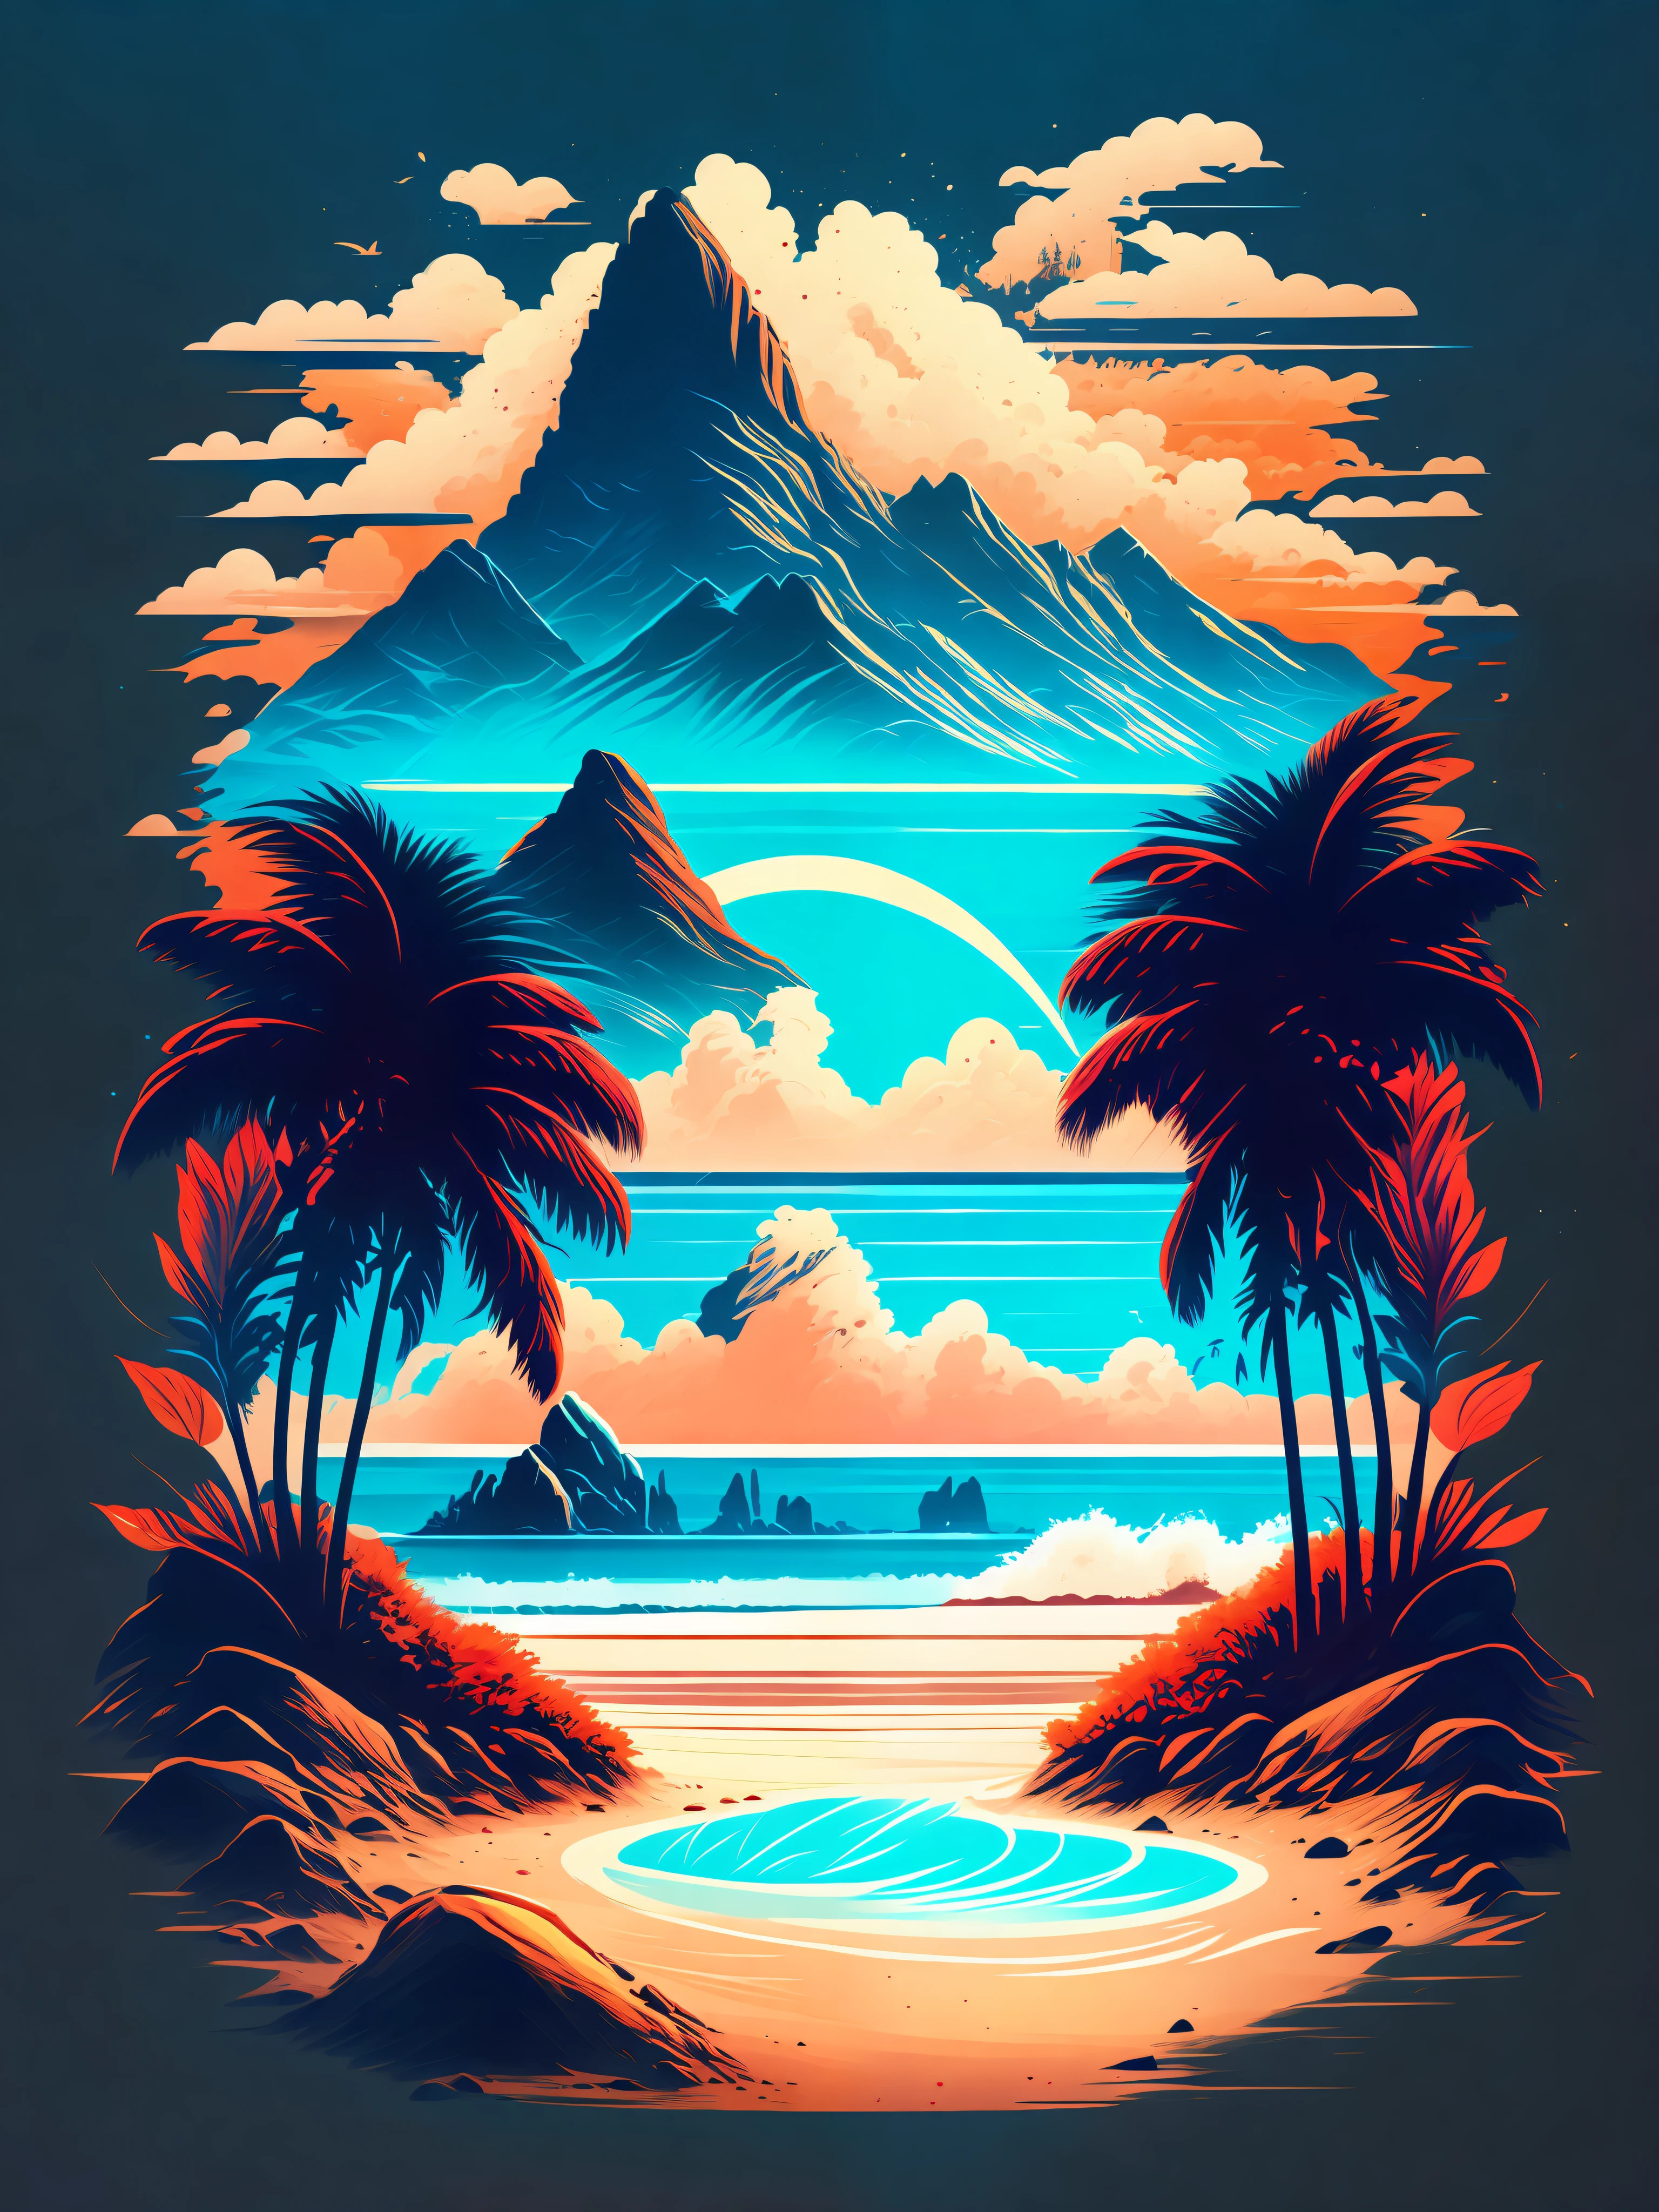 Ein Strand in einer Sommerlandschaft, T-Shirt Design, mitten auf der Reise, Vektorgrafiken, hydro74